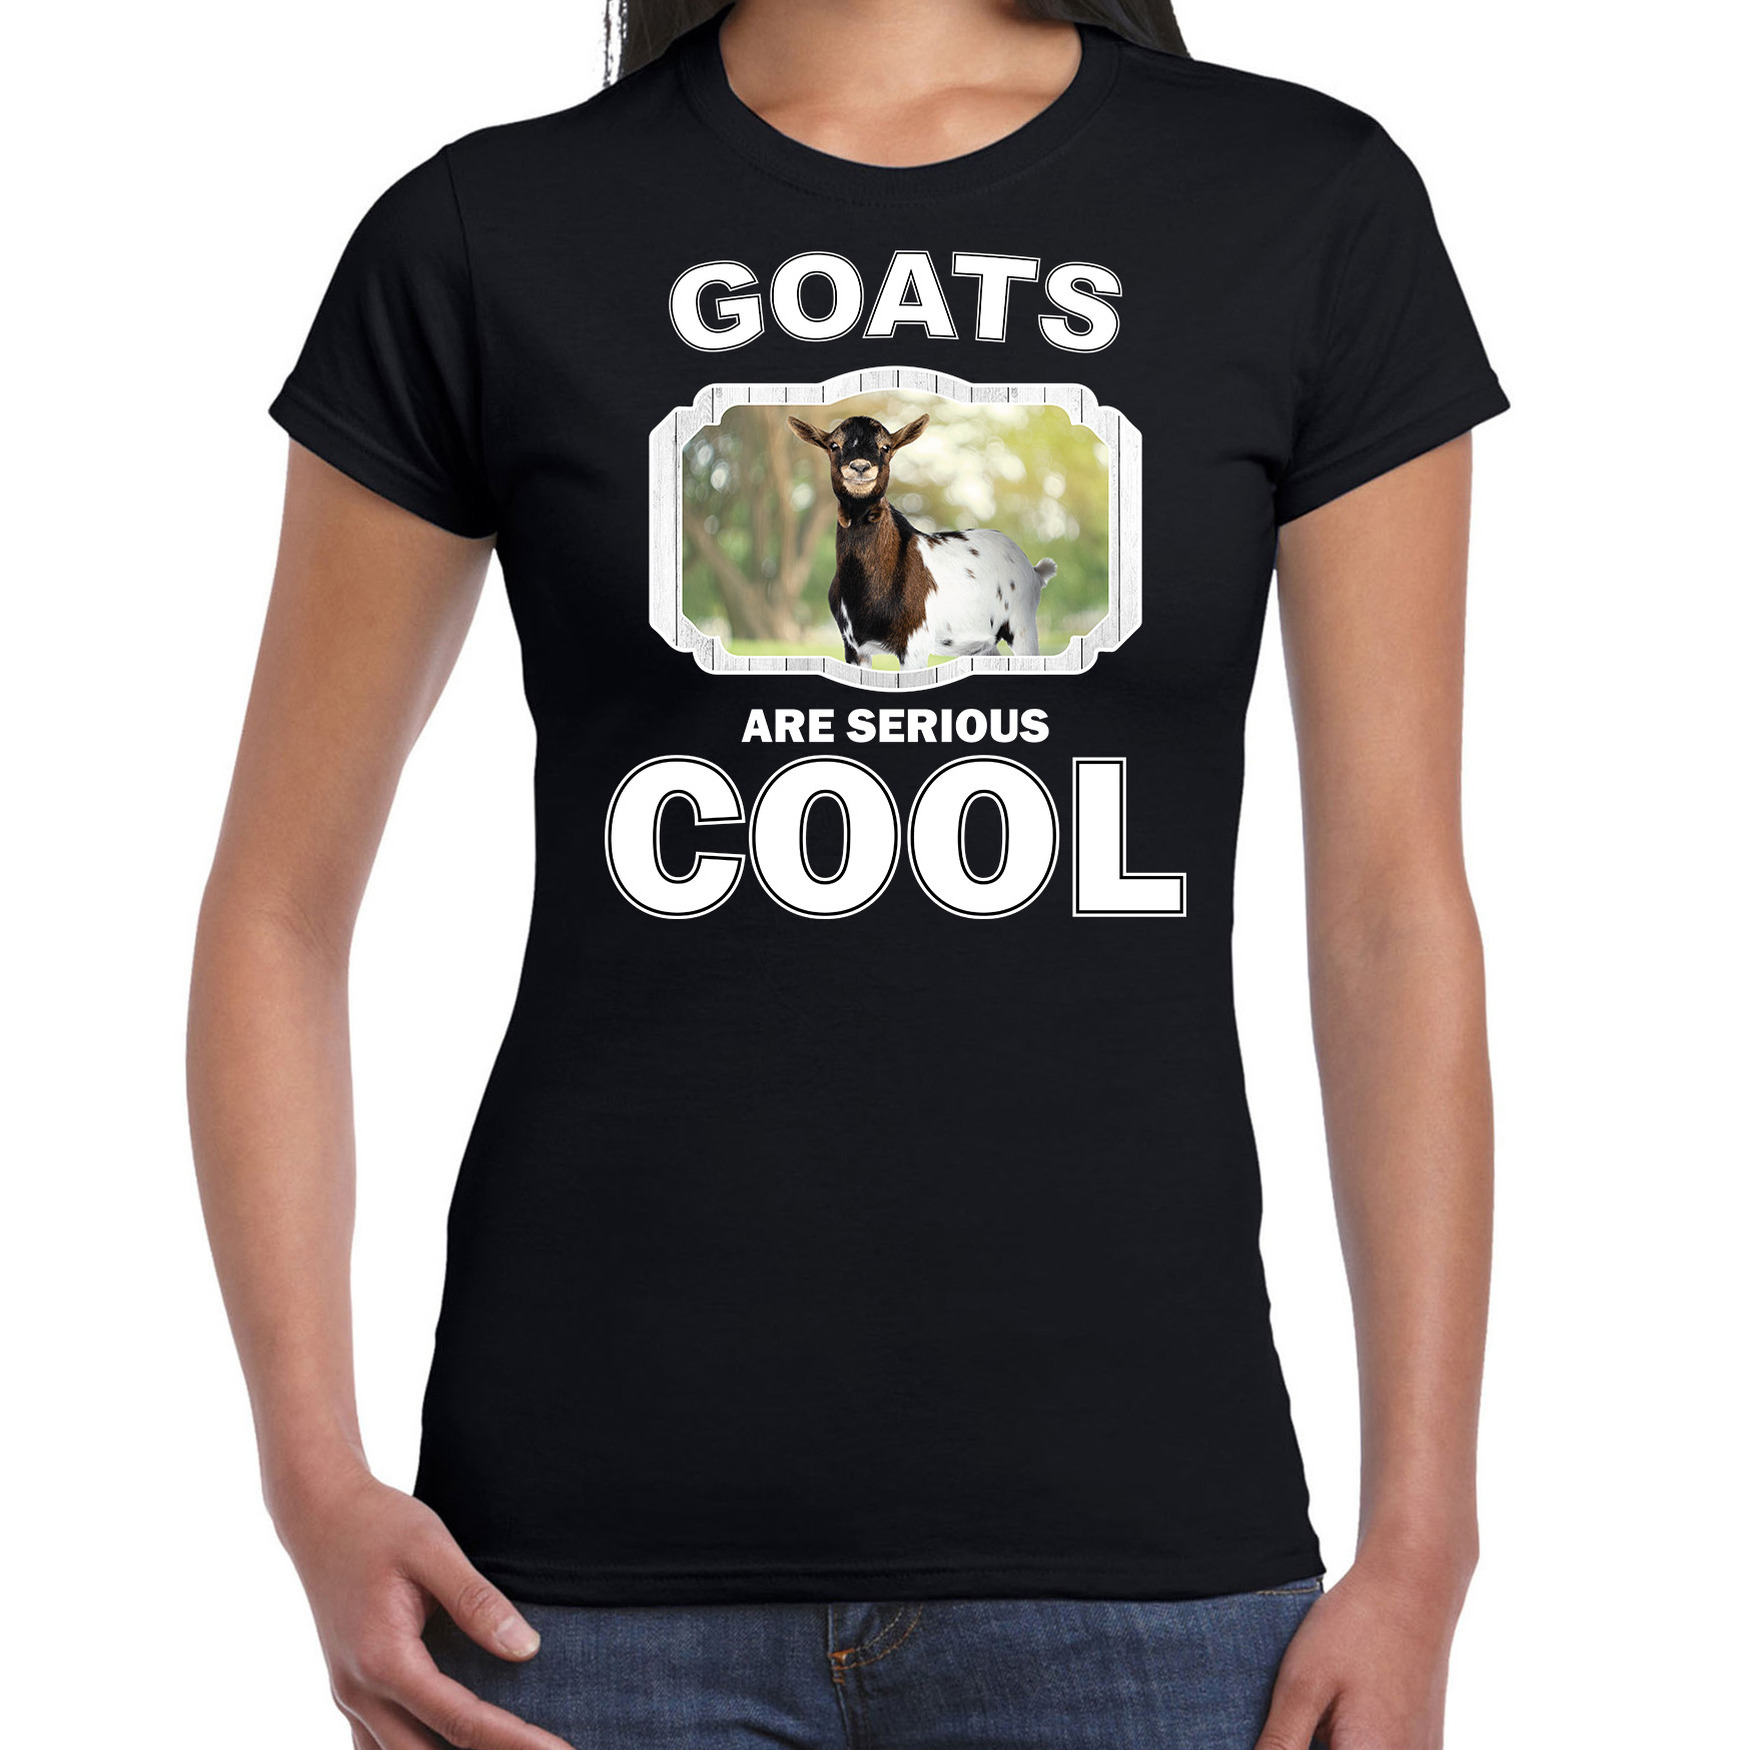 Dieren gevlekte geit t-shirt zwart dames - goats are cool shirt